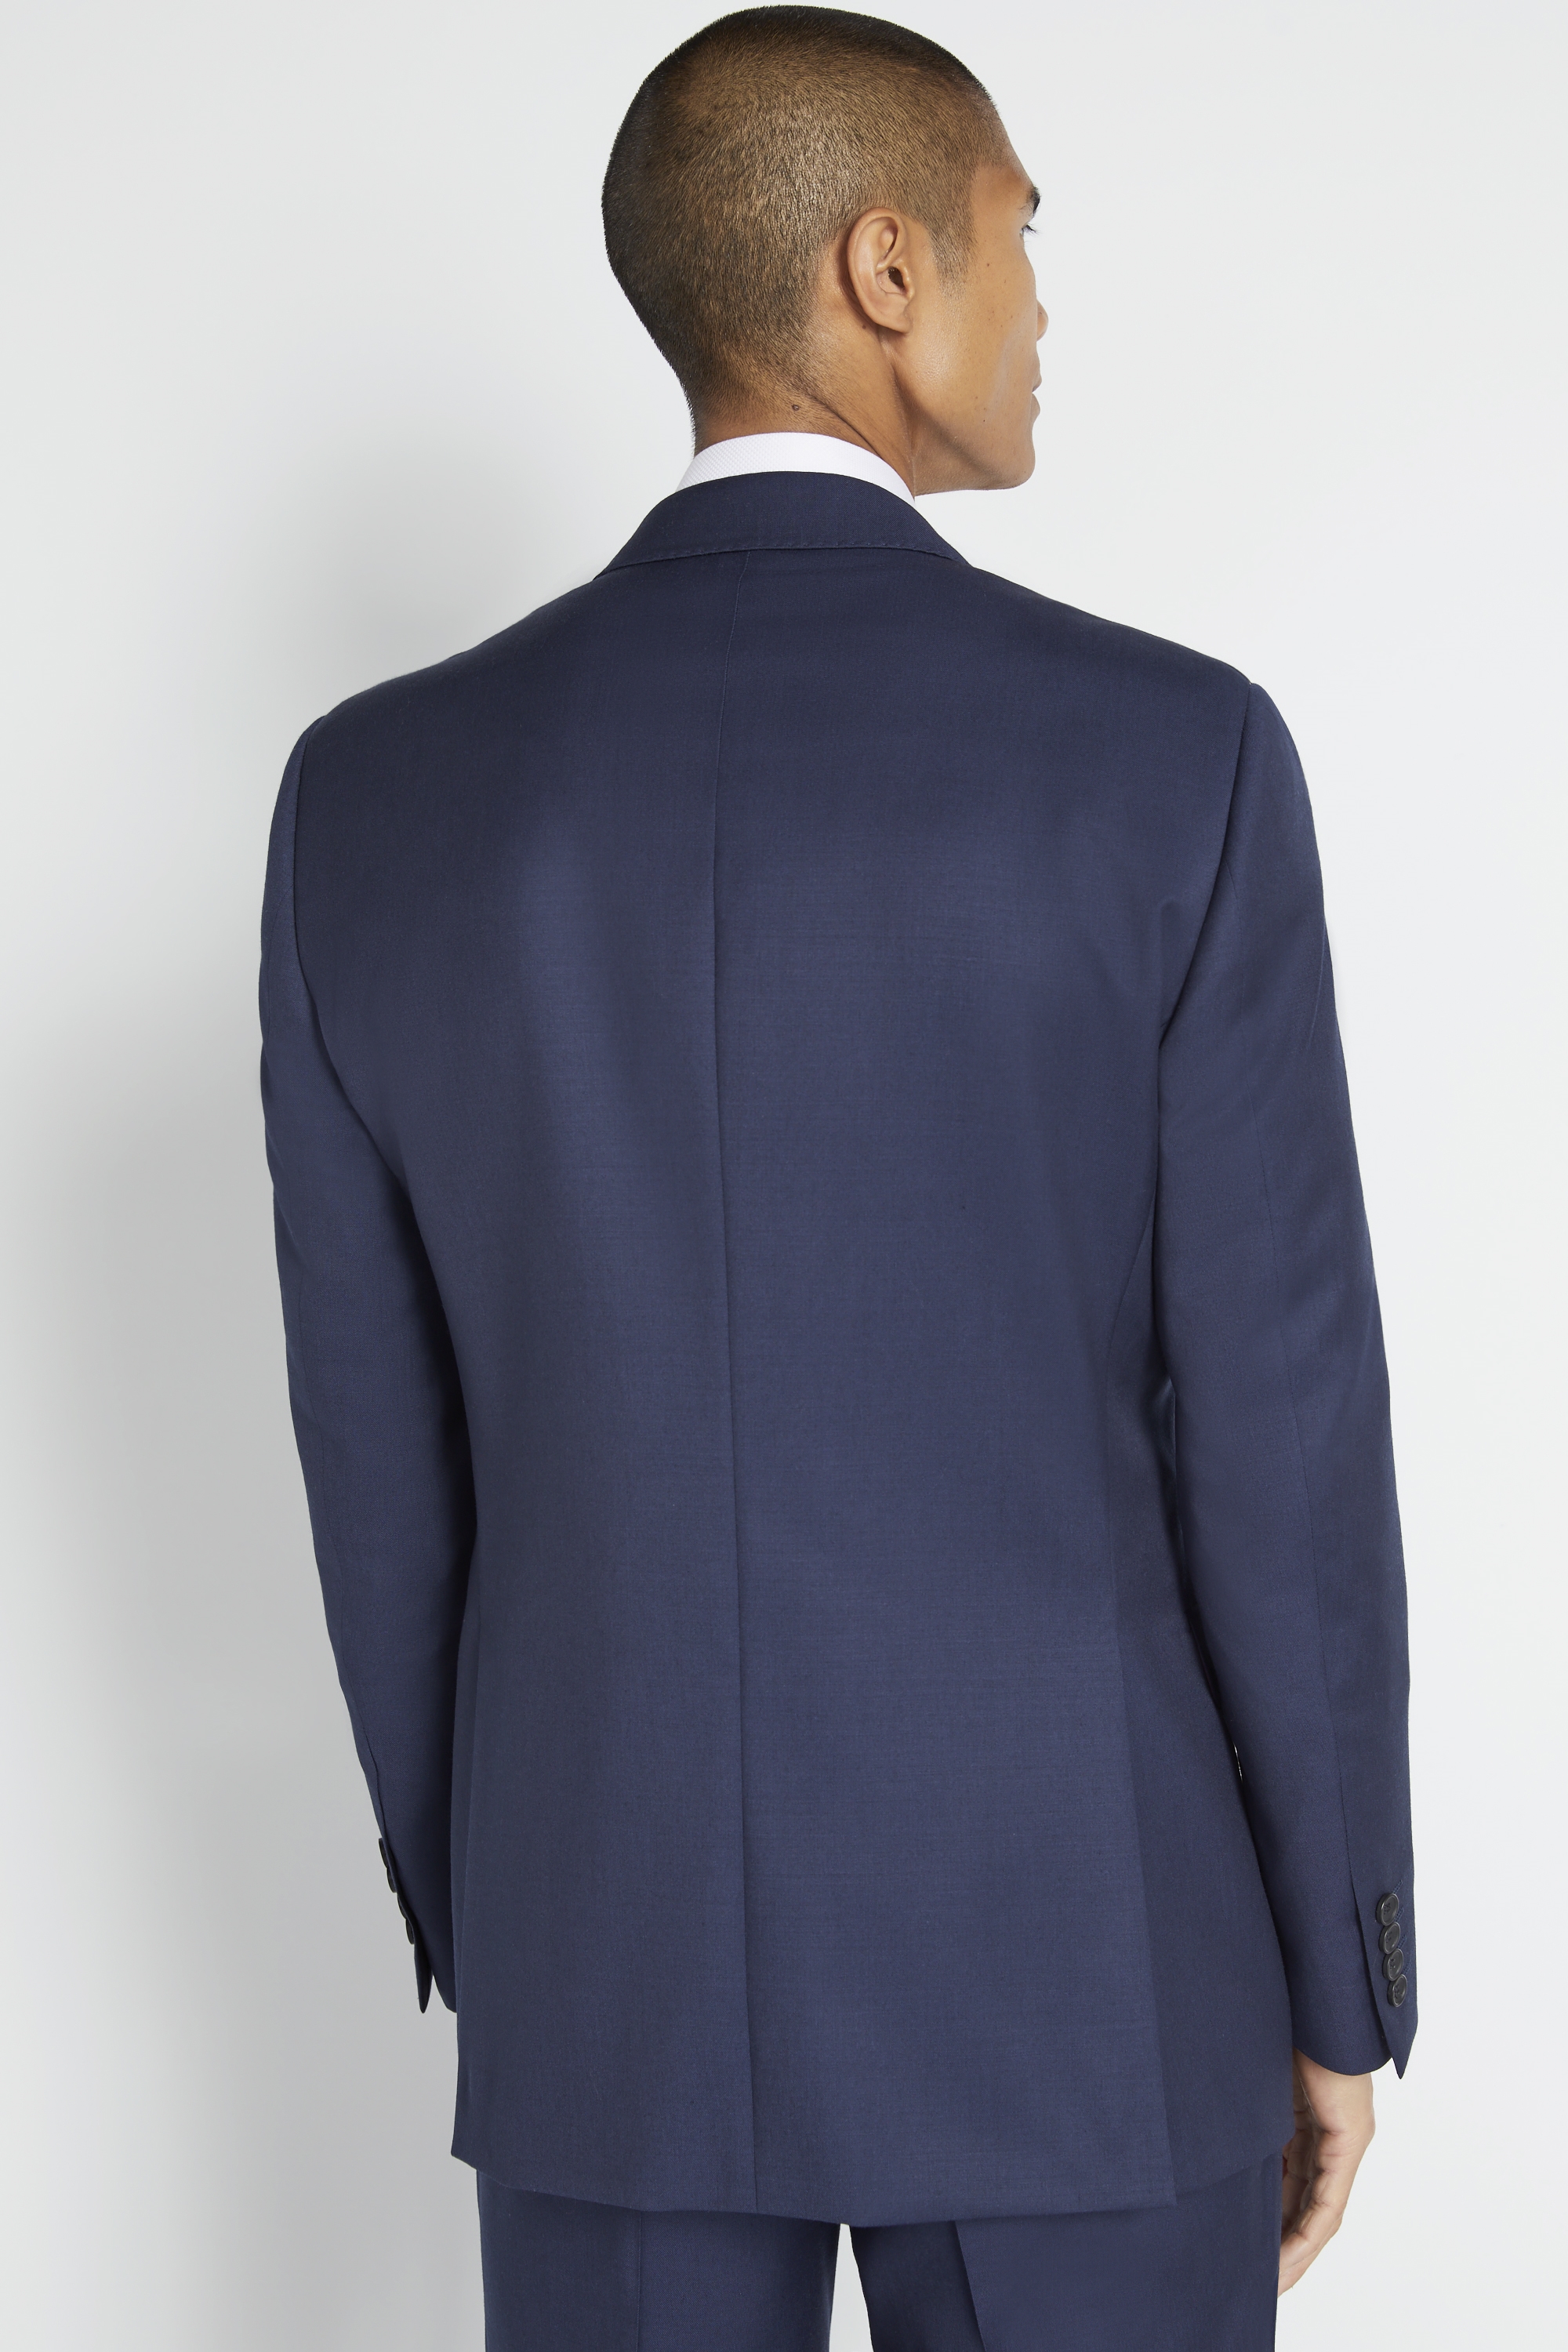 Regular Fit Navy Twill Jacket | Buy Online at Moss